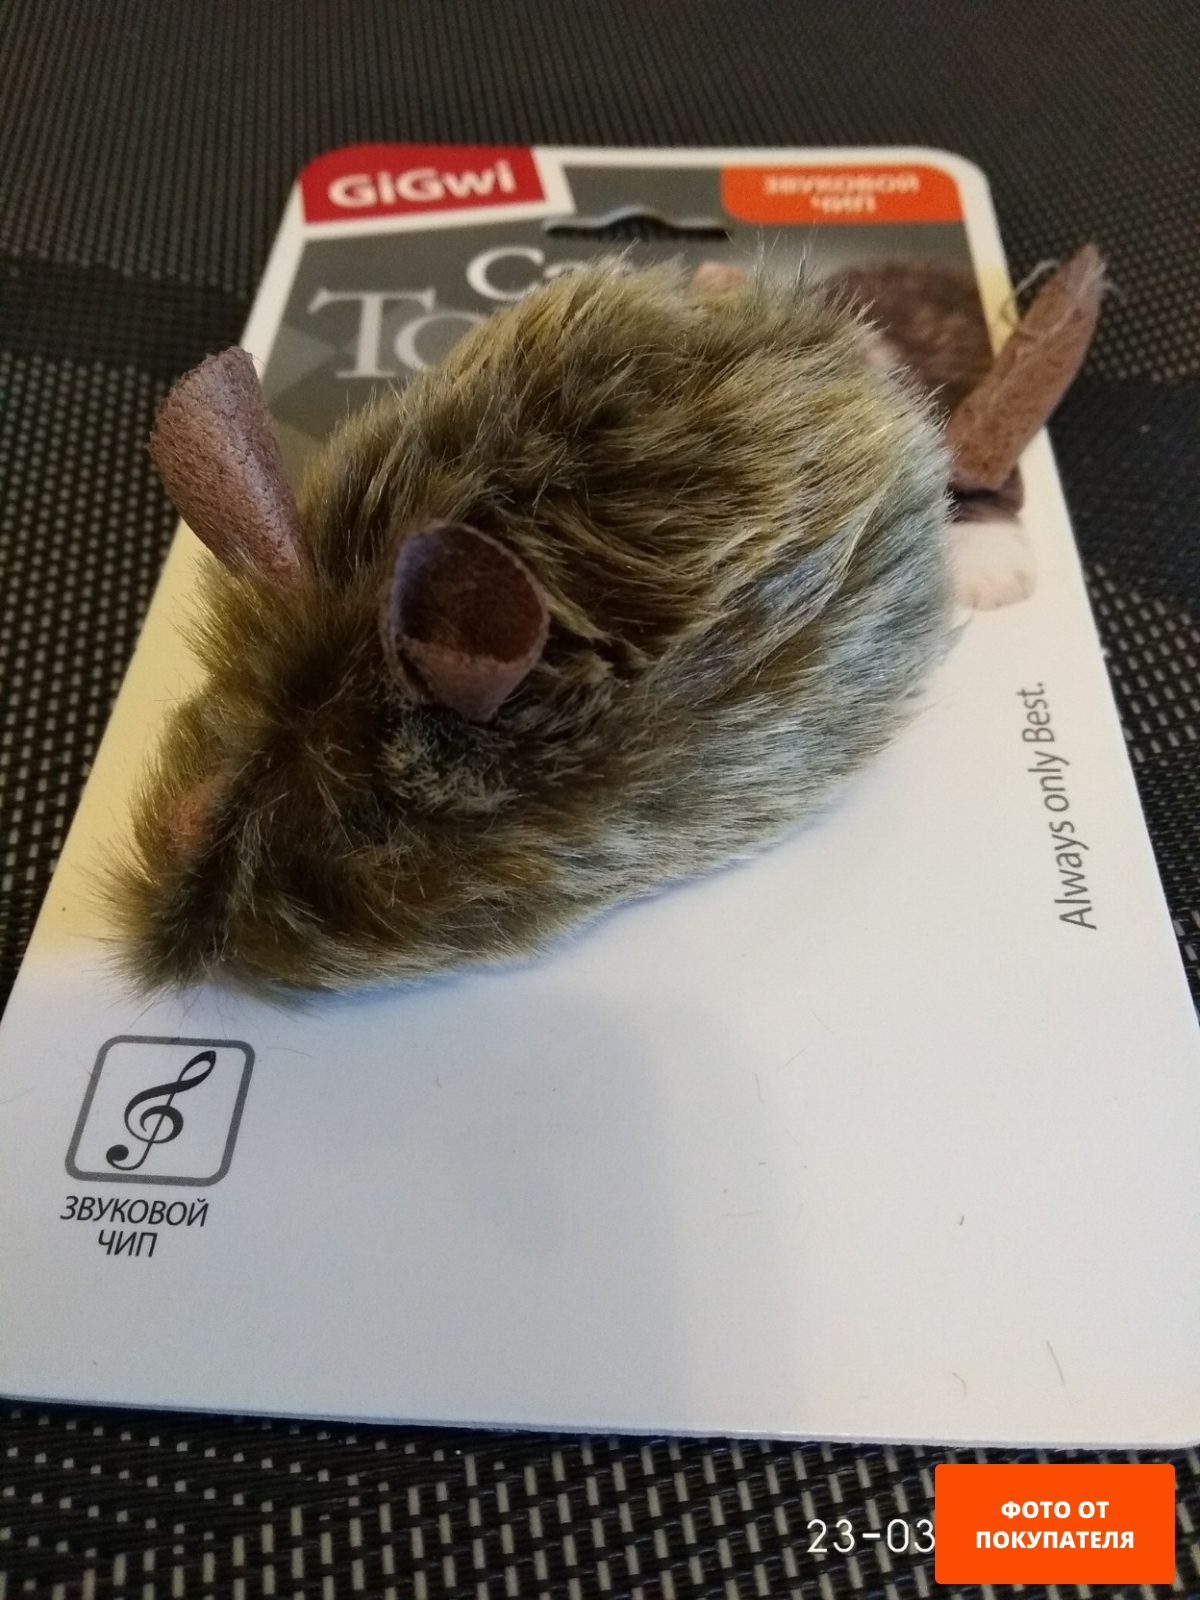 Игрушка для кошек GIGWI Мышка со звуковым чипом 15 см (75101) - Фото 2